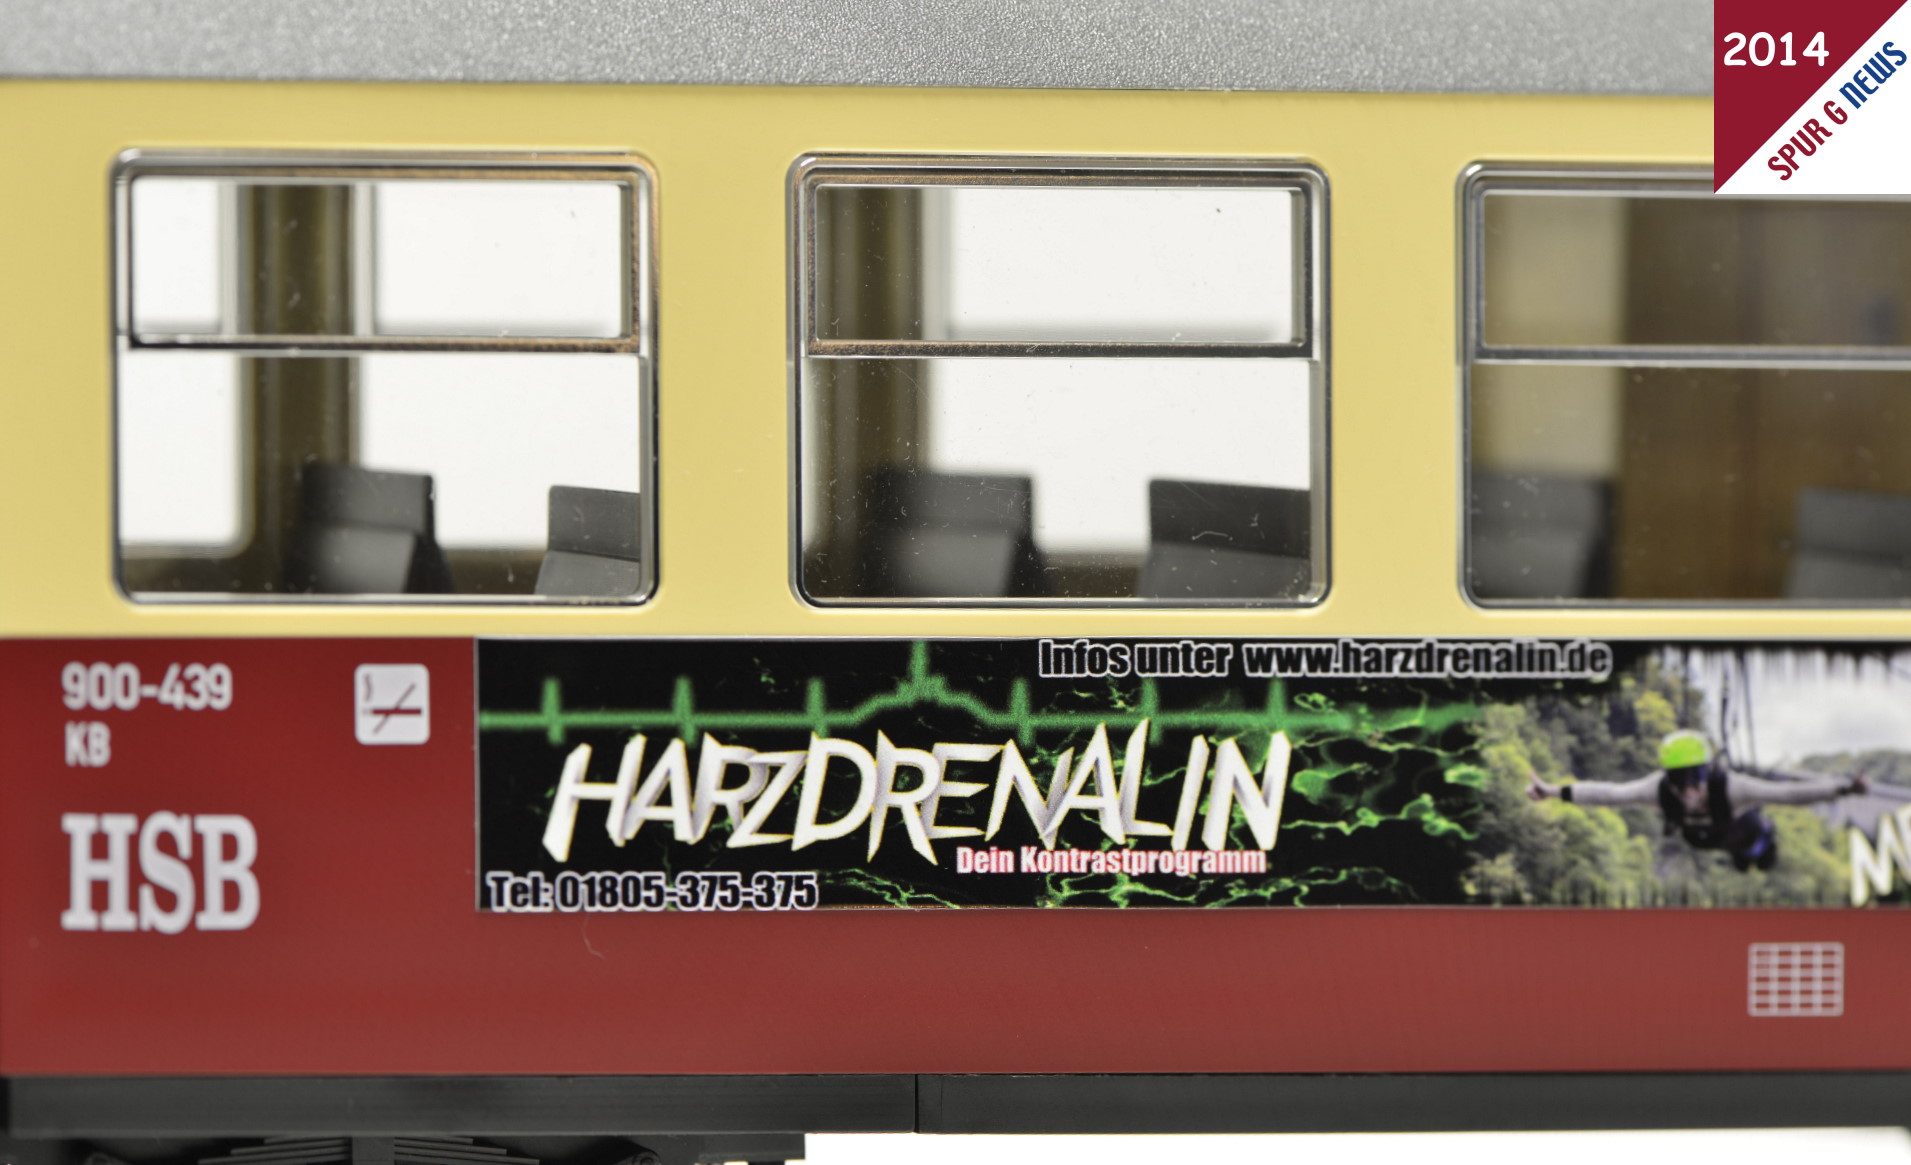 HSB - Harzer Schmalspurbahnen - Werbewagen HARZDRENALIN bereits erhltich. 